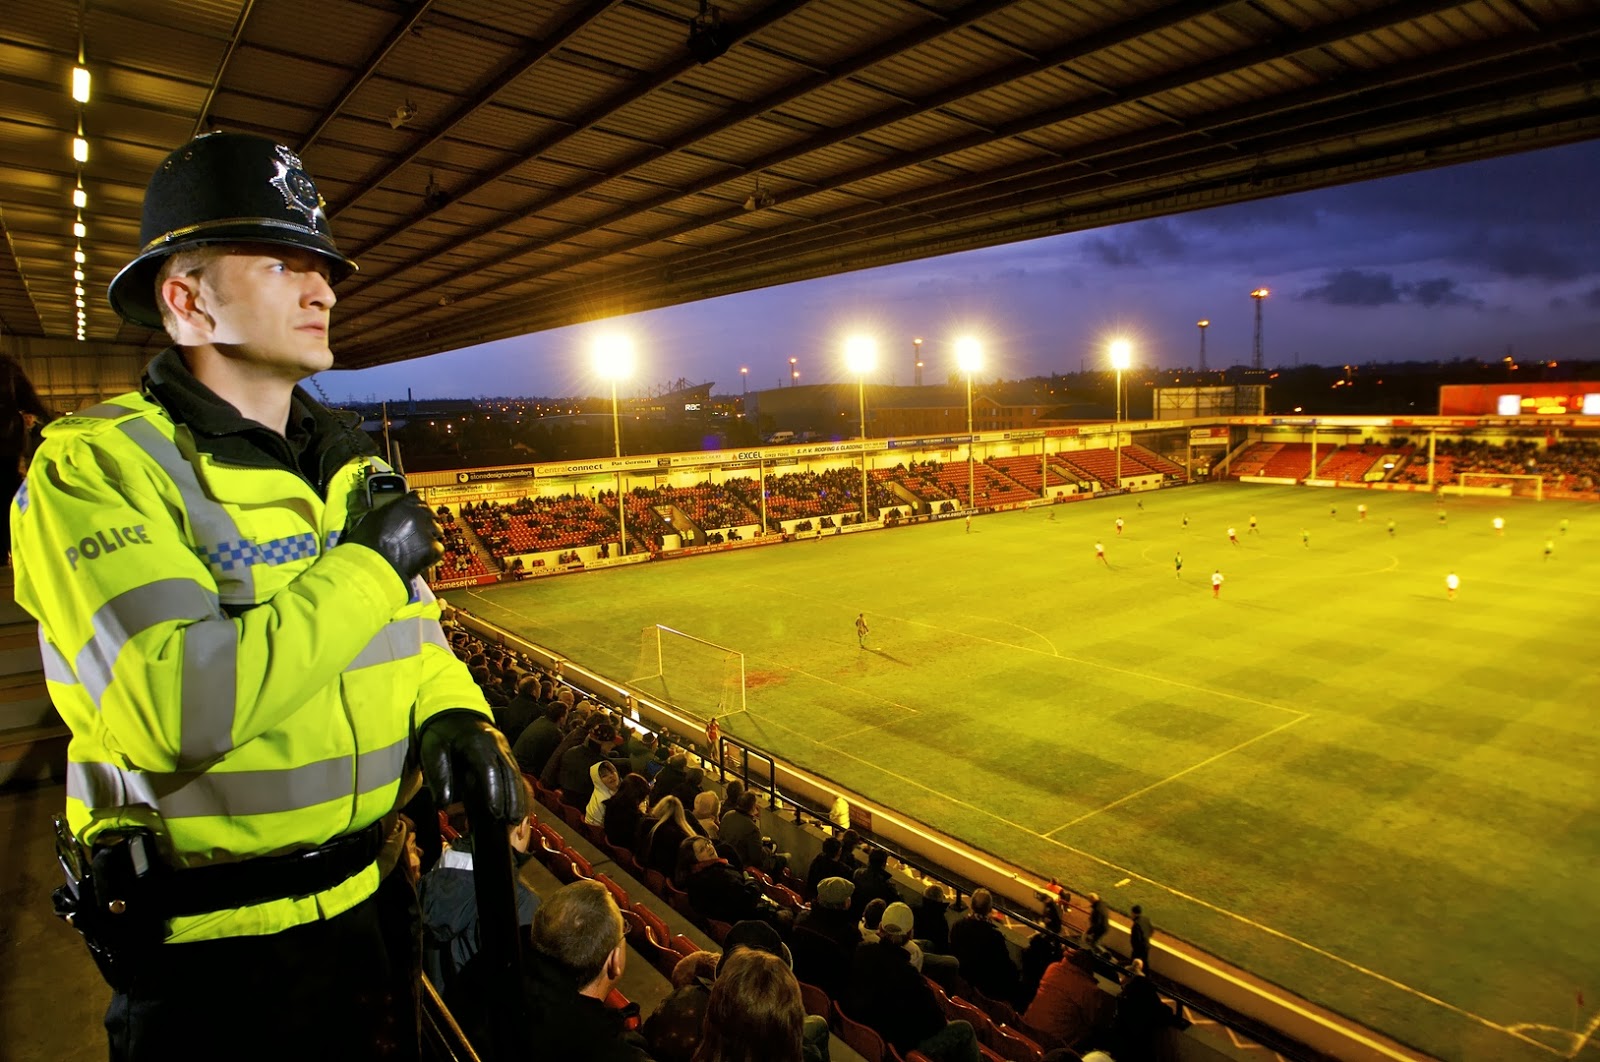 Едем на стадион. Охрана на стадионе. Охрана на футболе. Полиция на футбольном стадионе. Стюарды на стадионе.